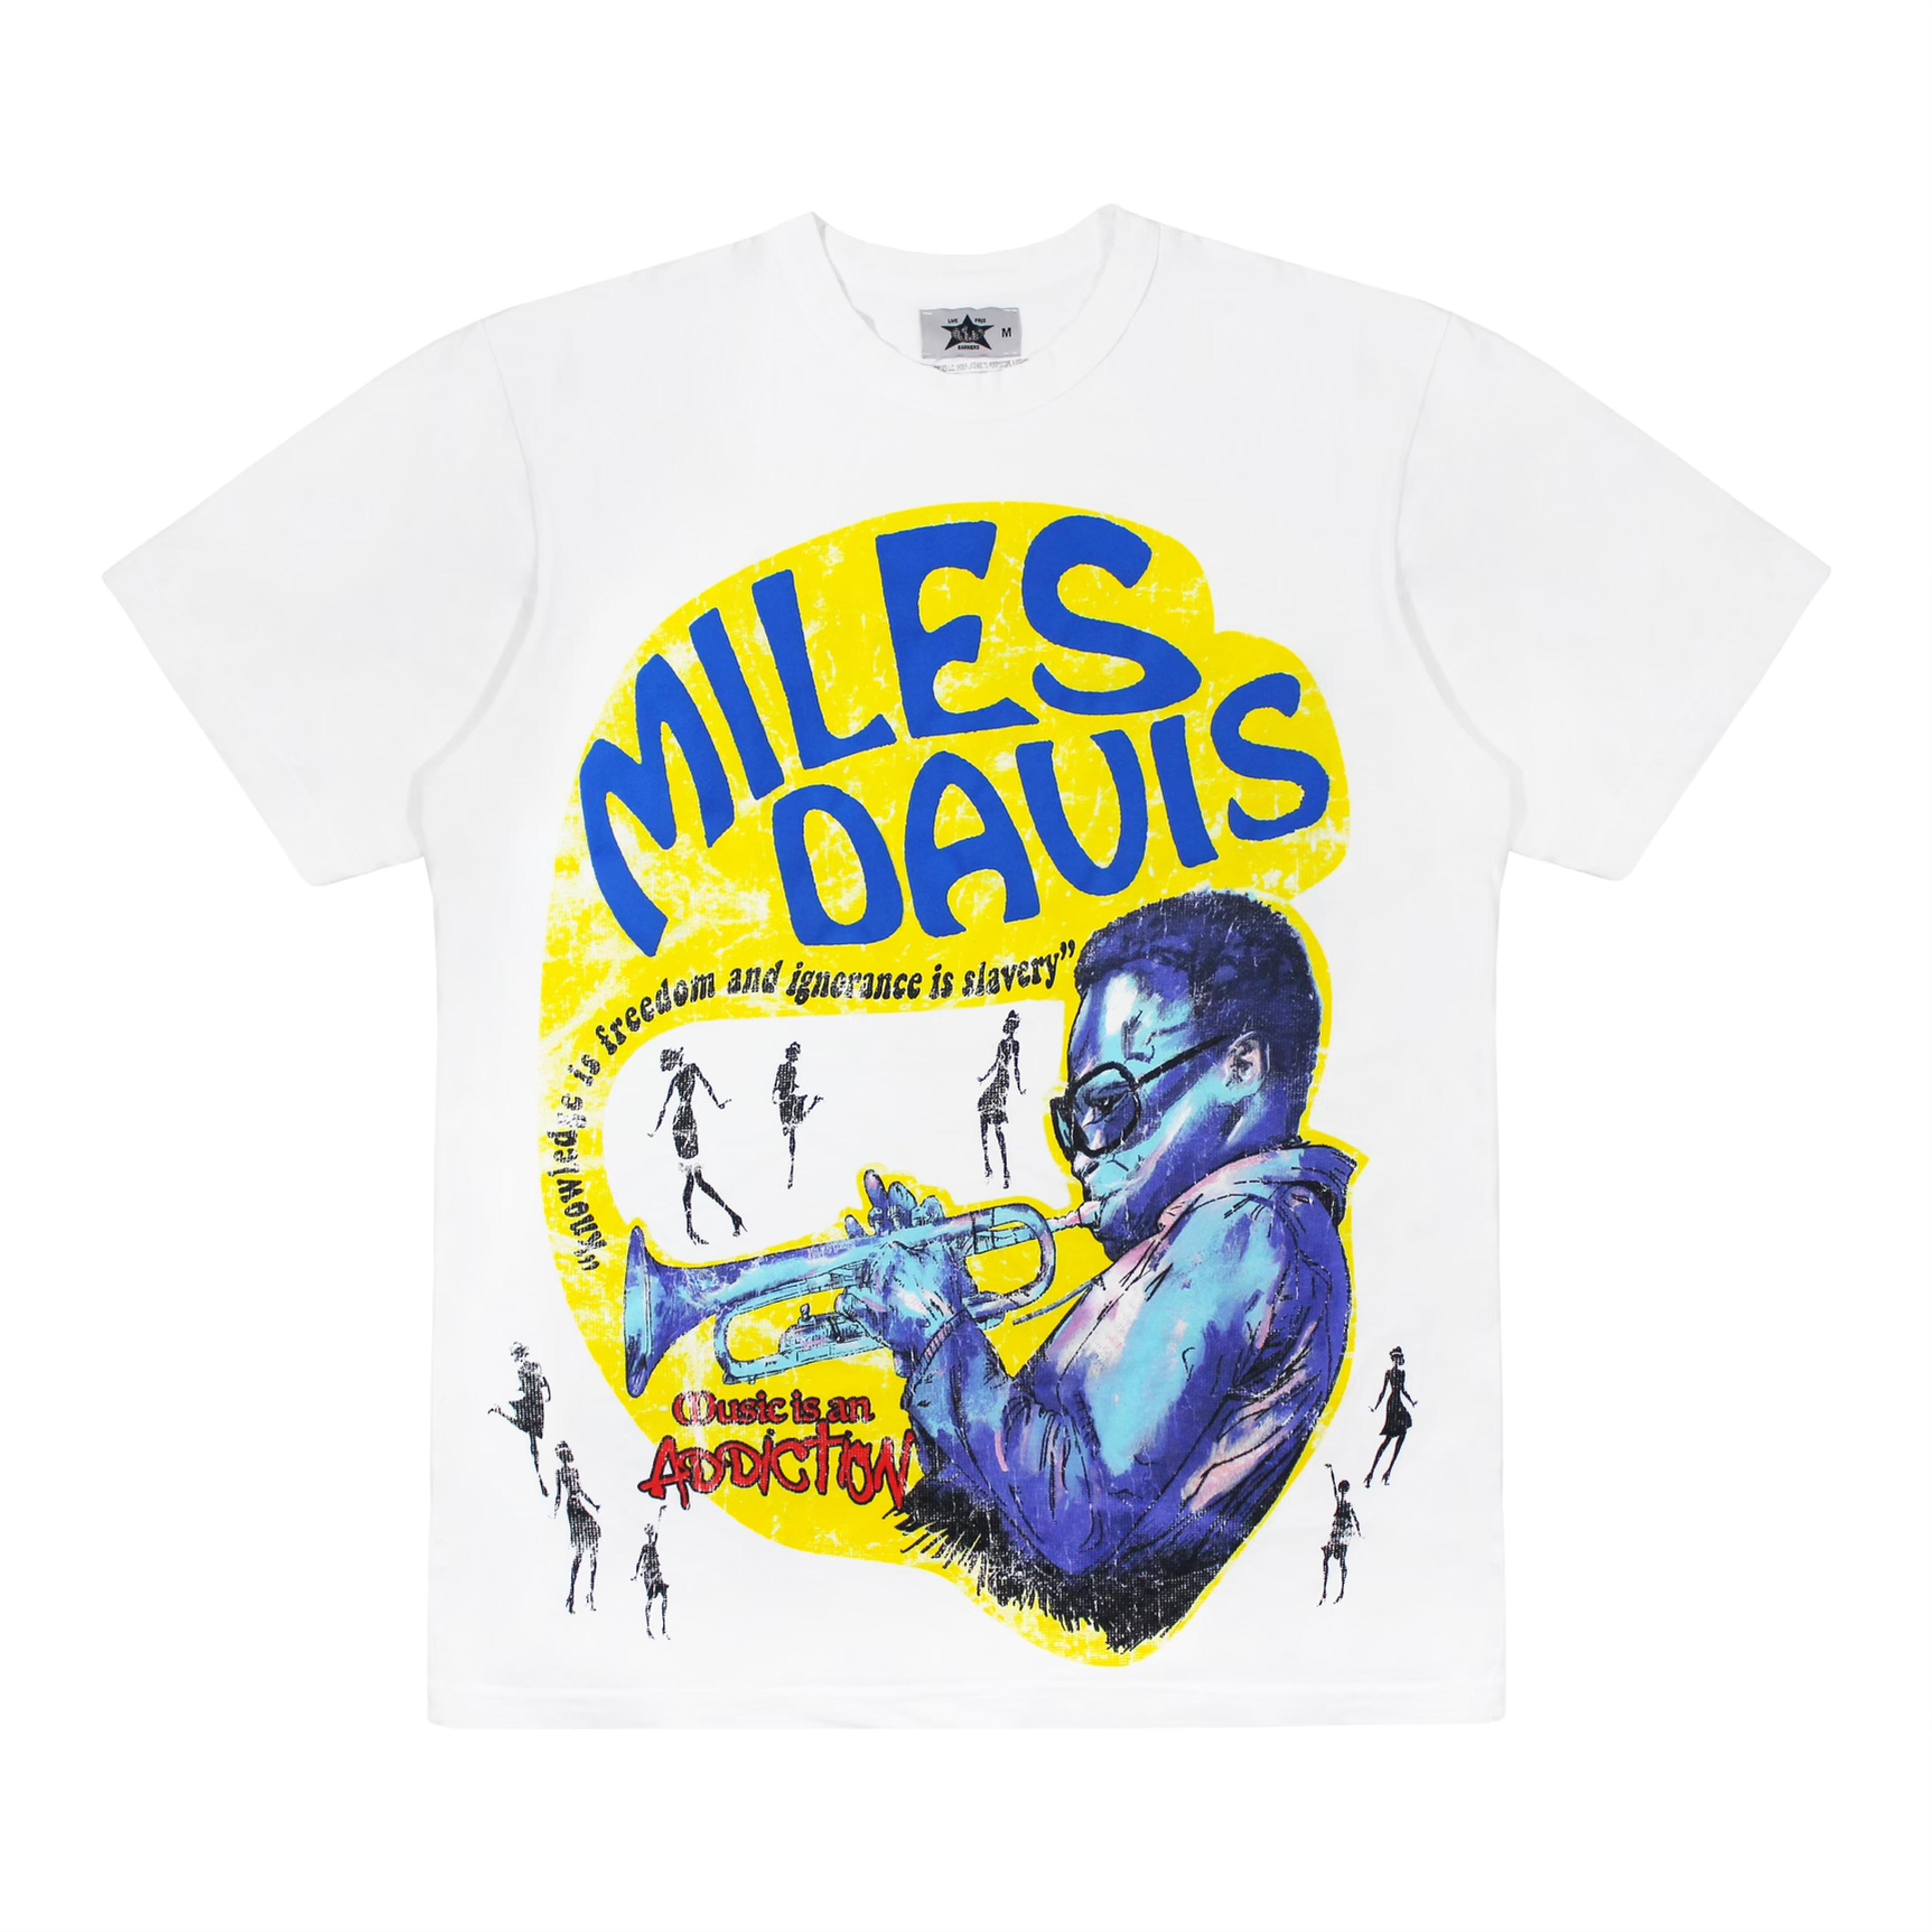 Barriers  "Miles Davis" T-Shirt